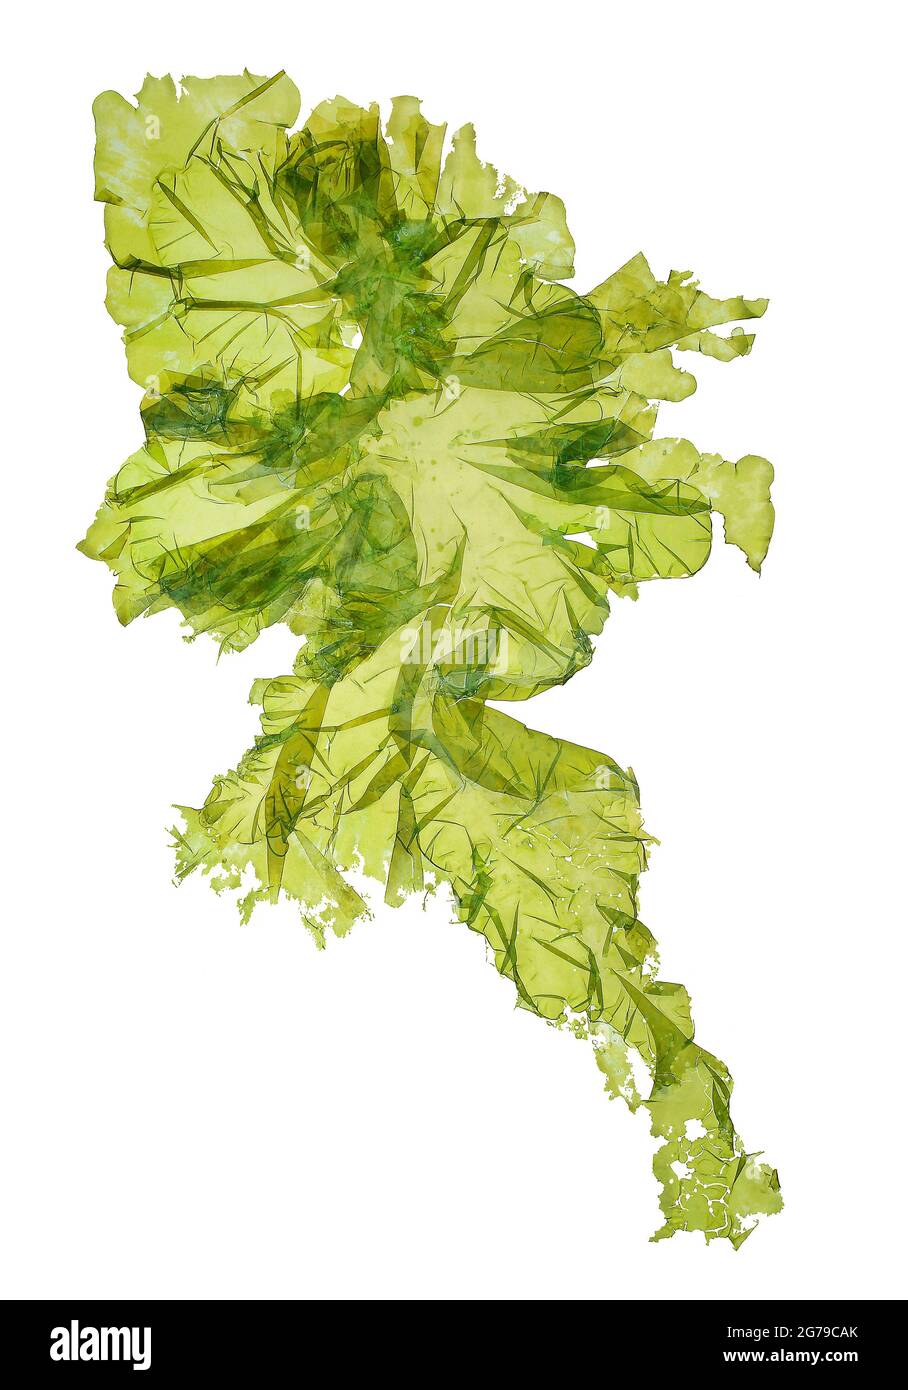 Ulva lactuca Linnaeus, alga verde (Chlorophyta, Ulvophyceae) Foto de stock